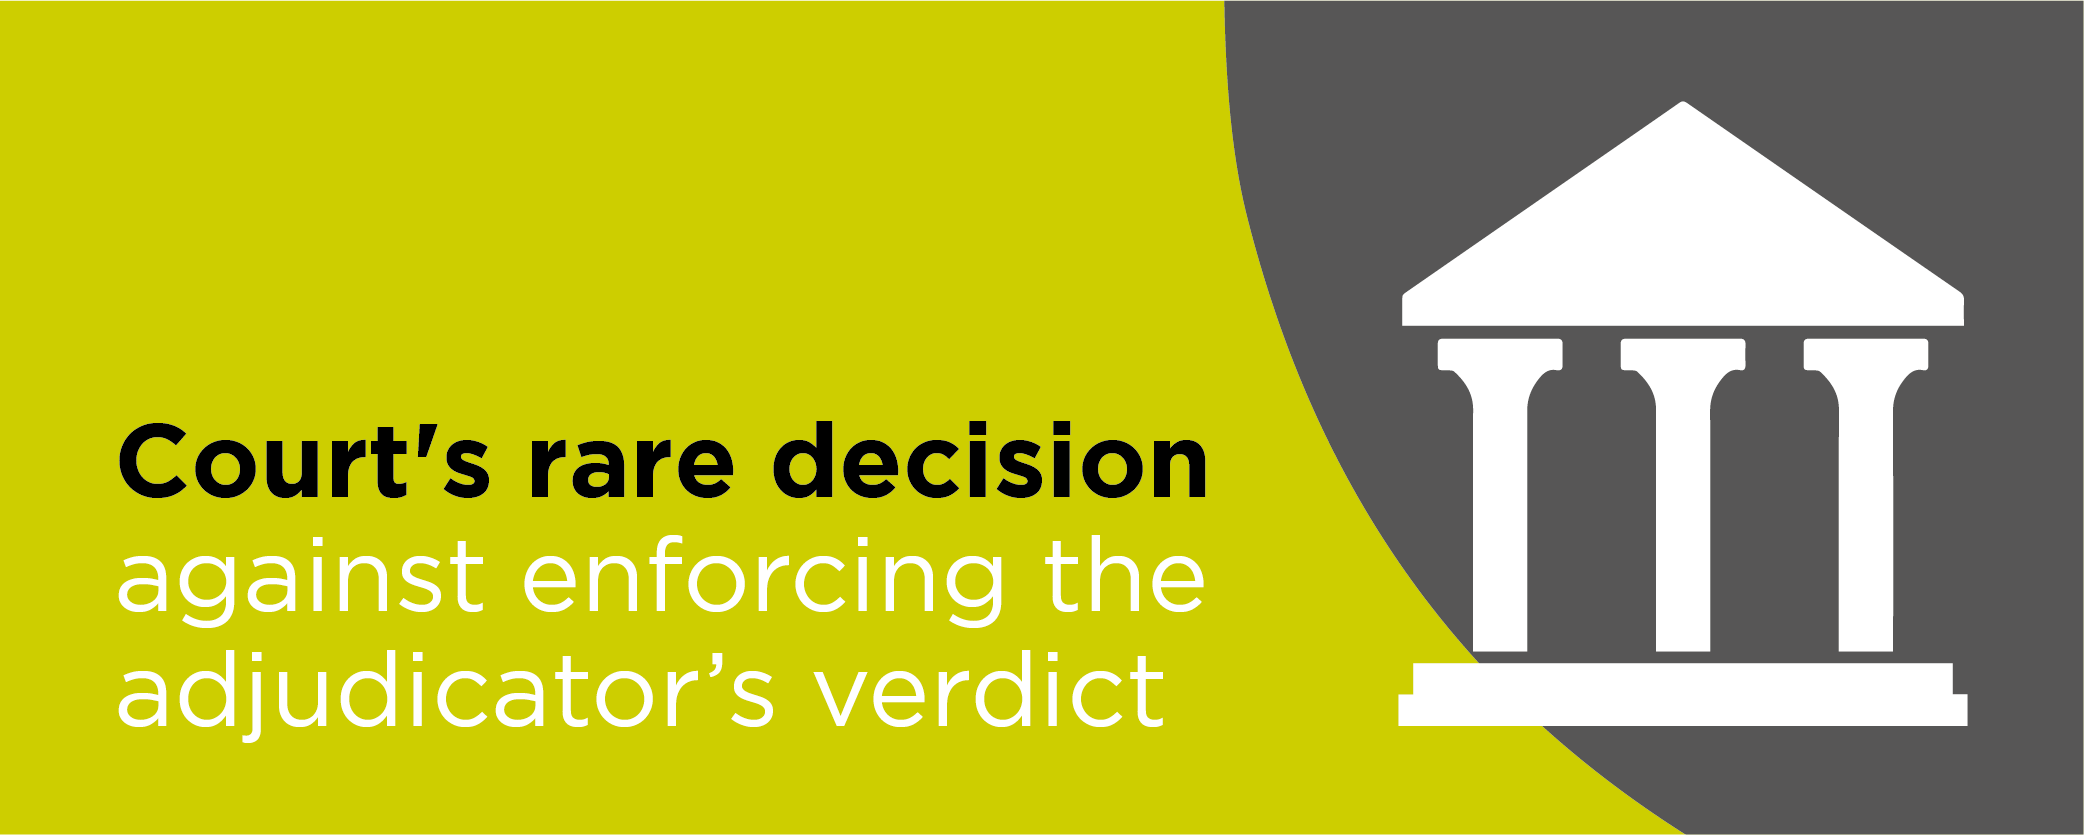 Courts rare decision against enforcing the adjudicators verdict